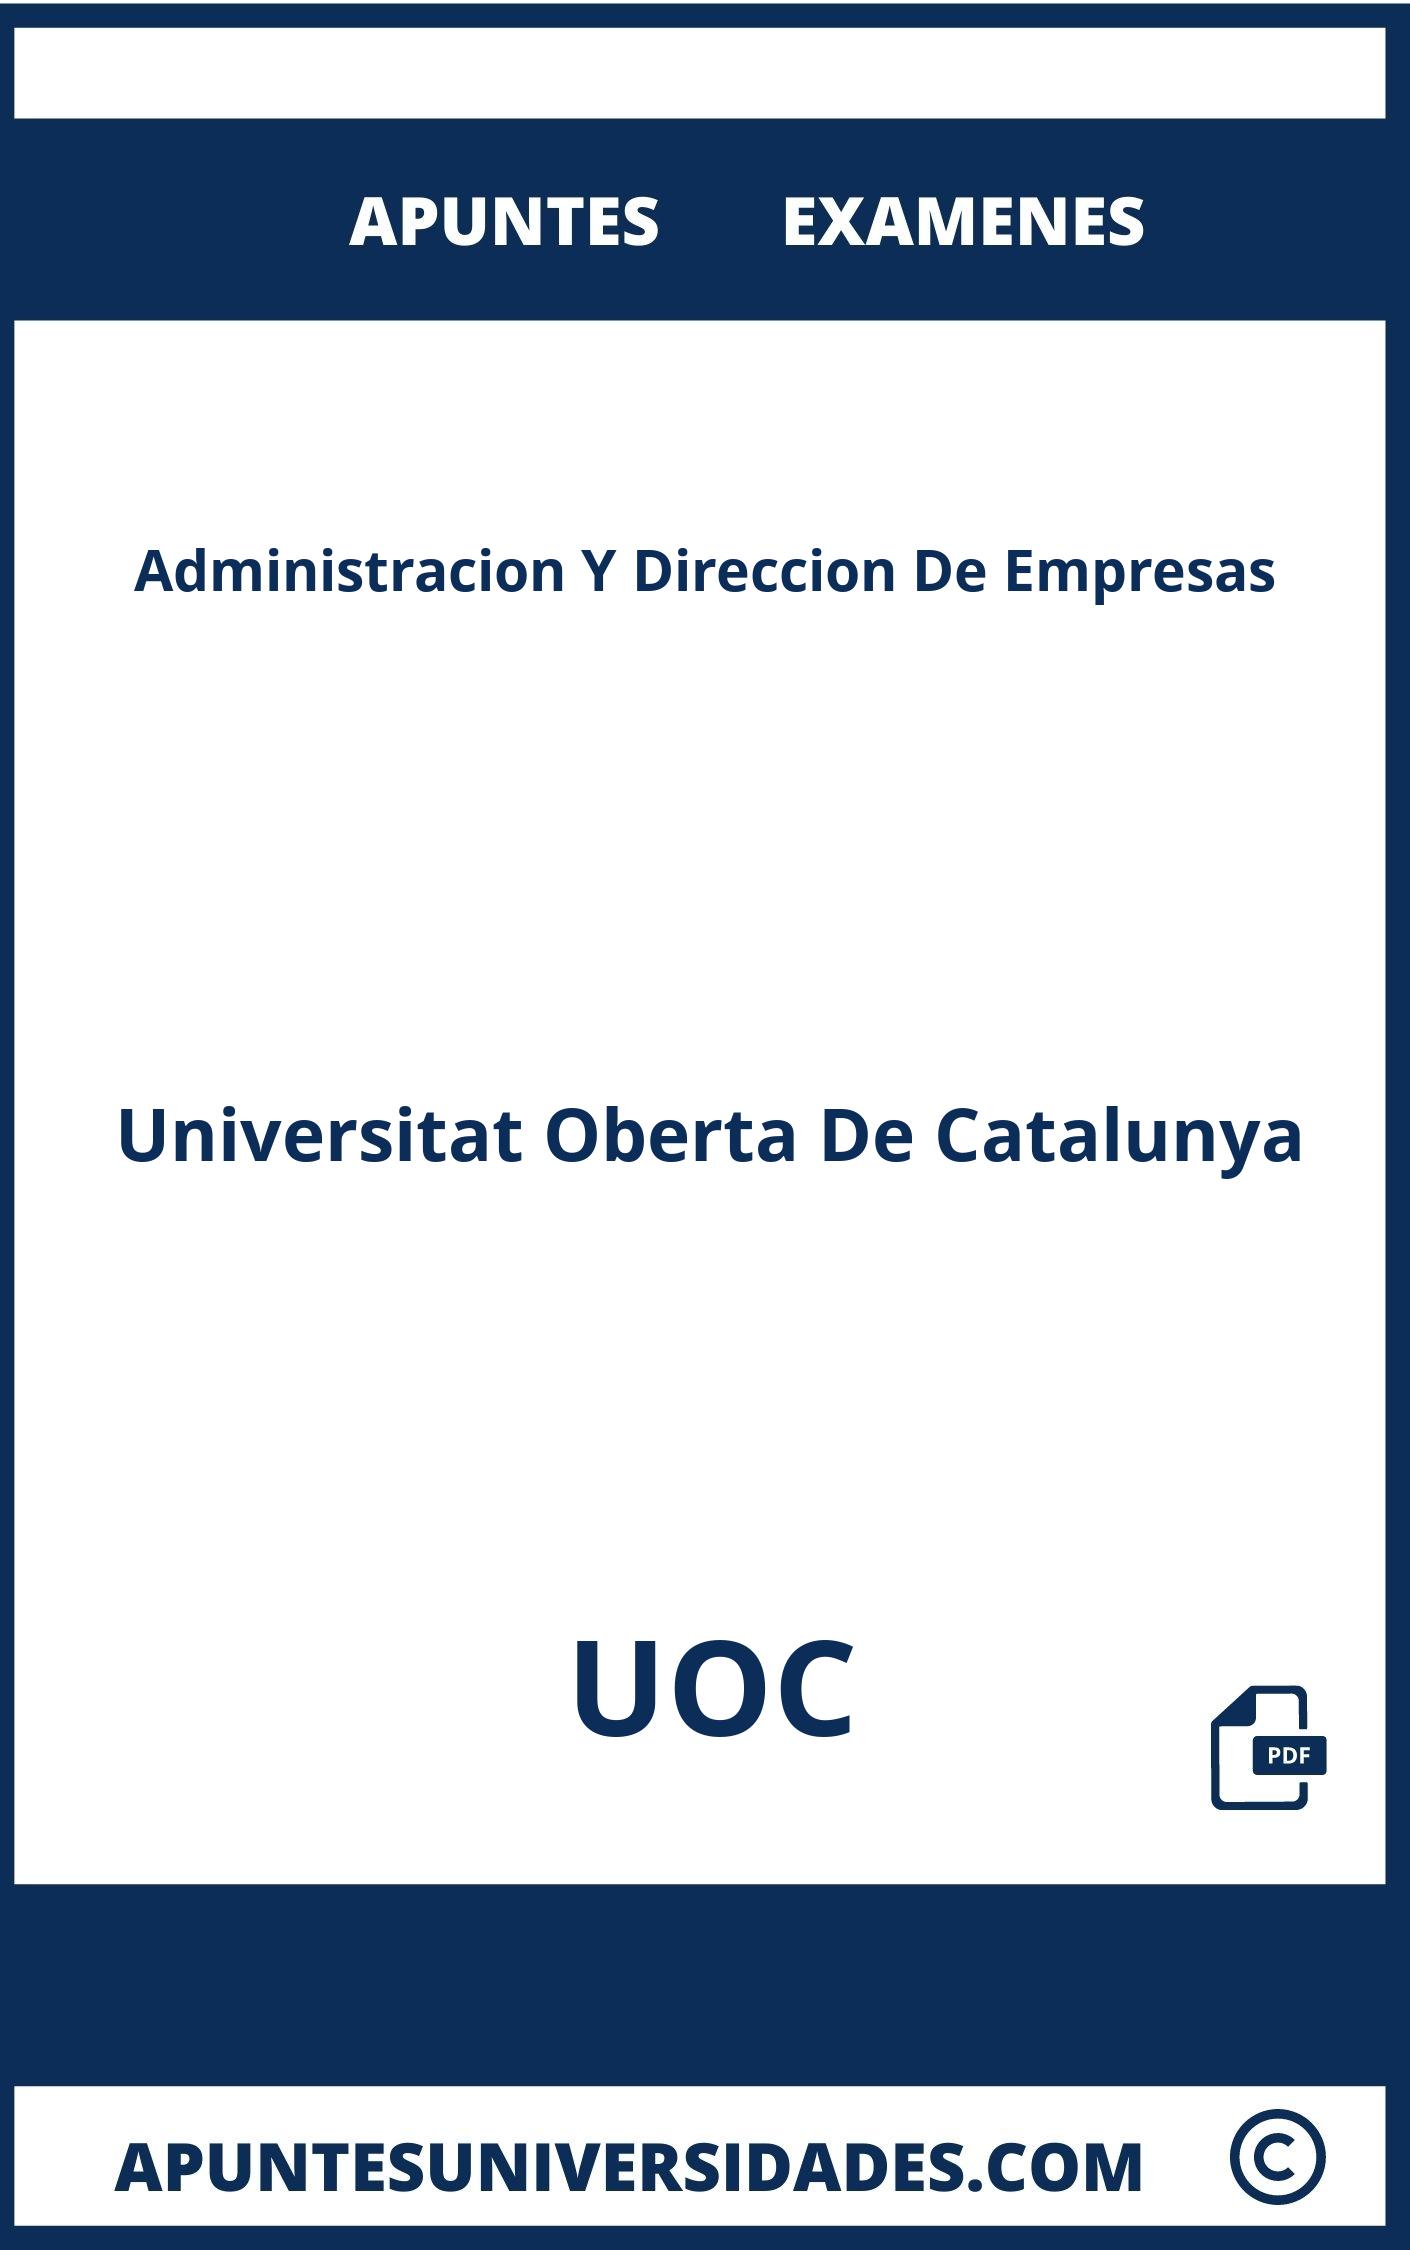 Apuntes y Examenes Administracion Y Direccion De Empresas UOC